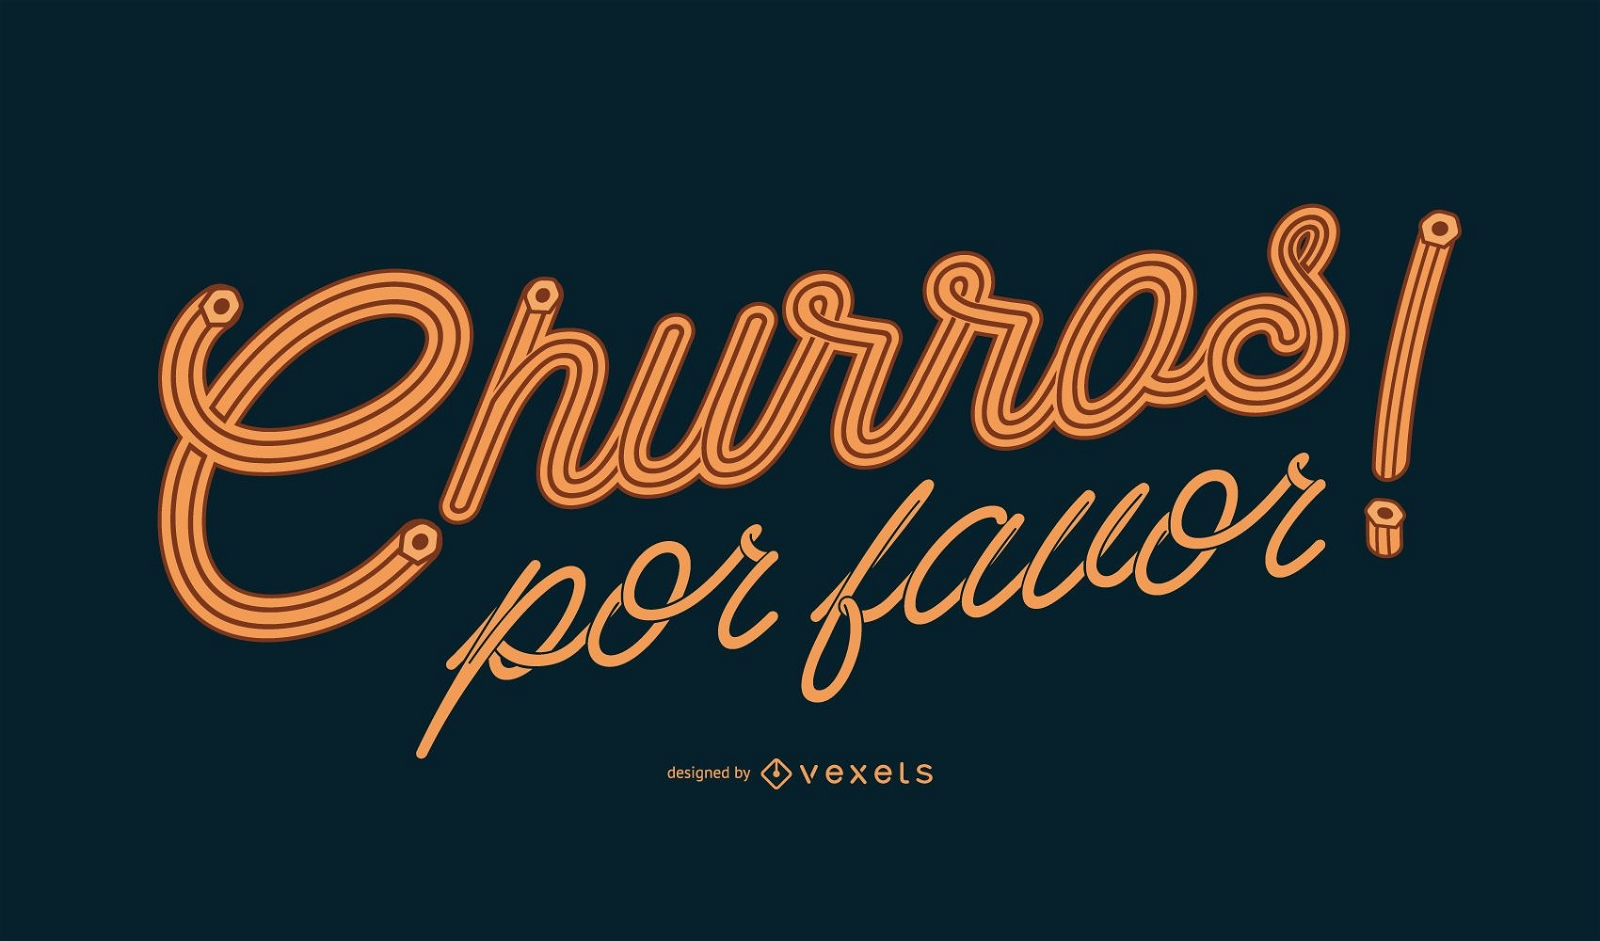 Churros spanisches Schriftzugdesign